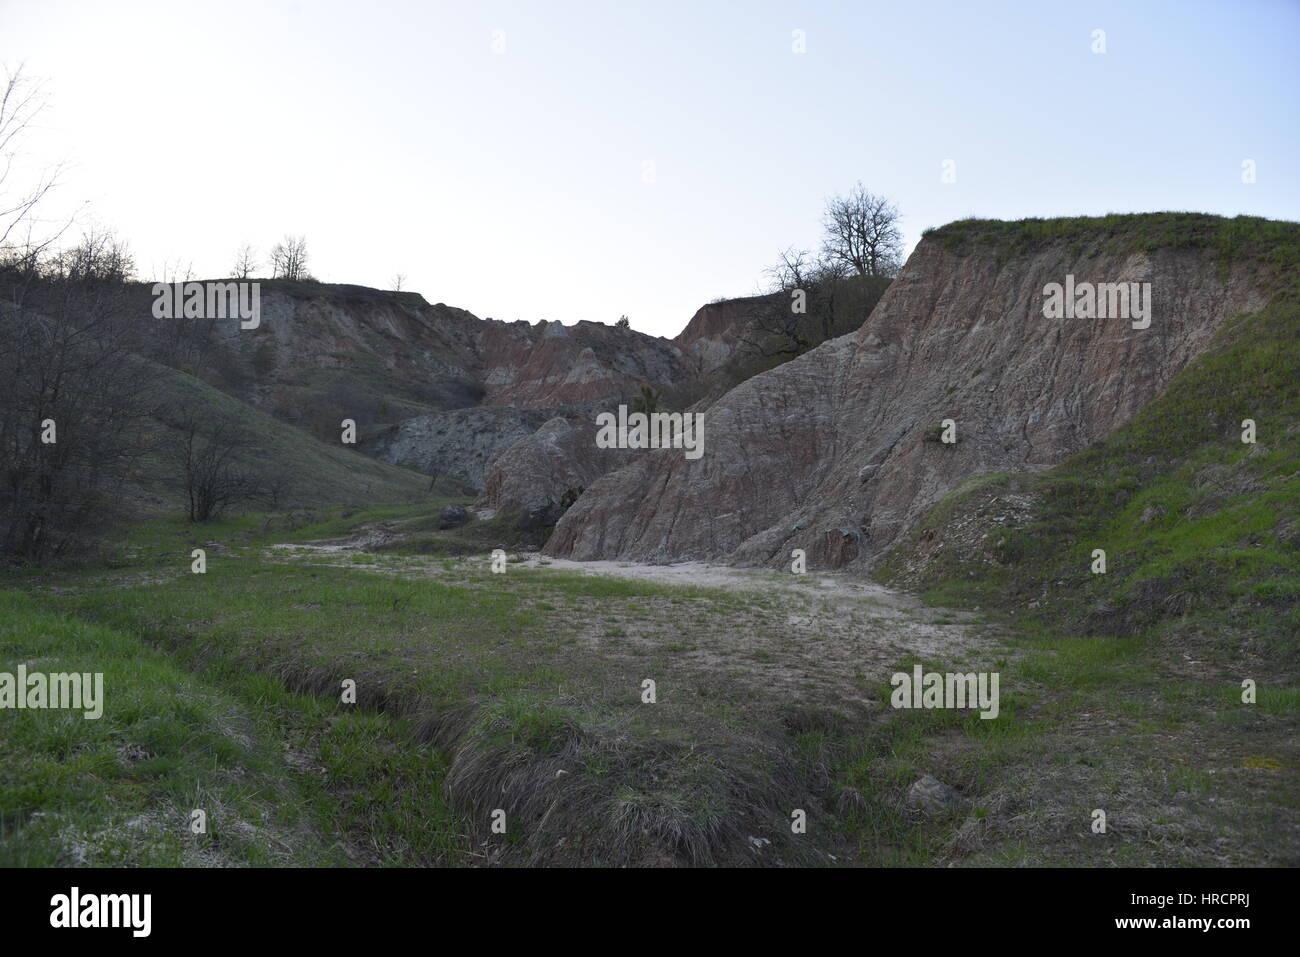 Badlands von Lehmboden im oberen Tal des Flusses Secchia Sassuolo Keramikproduktion Bereich Stockfoto